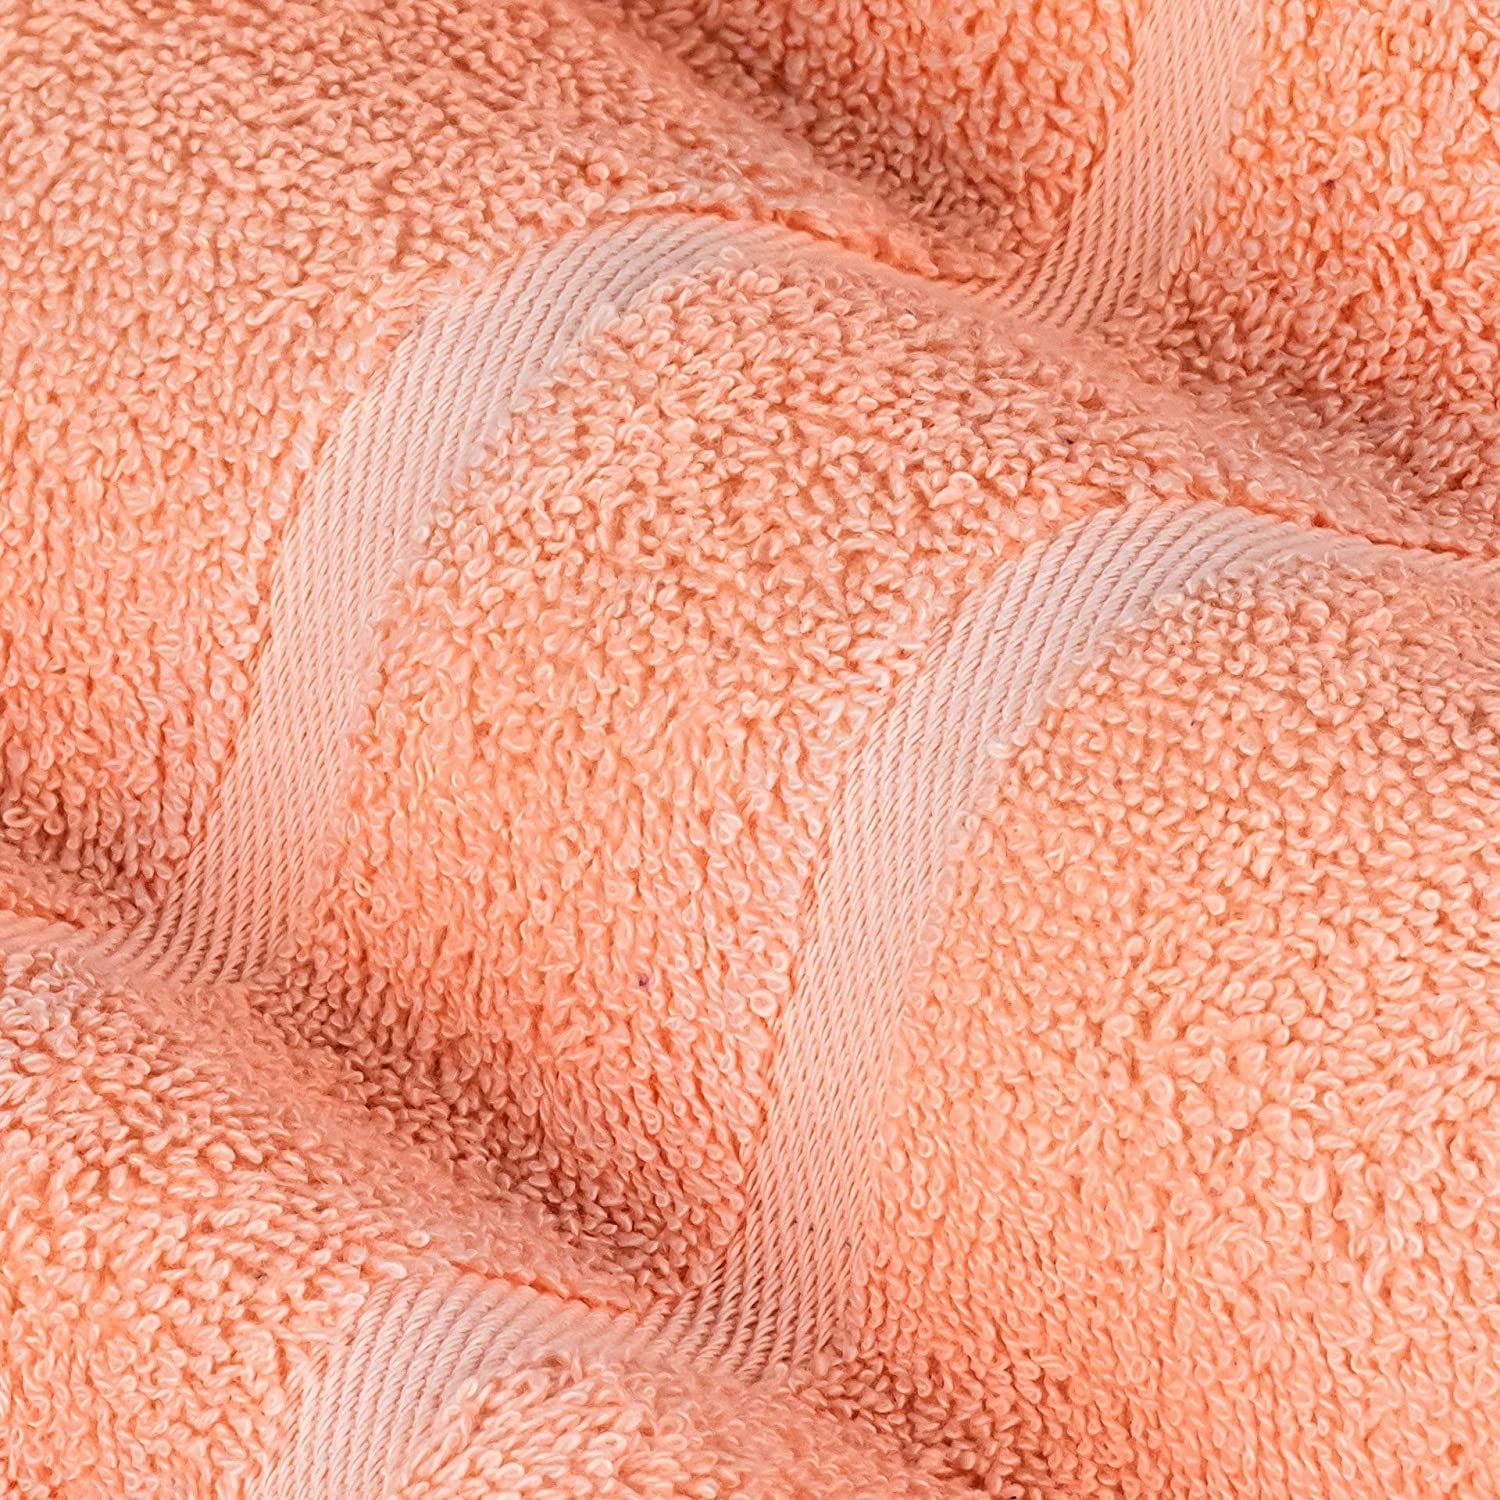 StickandShine Handtuch Set 4x Gästehandtuch Handtücher SET Duschtücher (Spar-SET) 100% 2x 4x Baumwolle, Peach